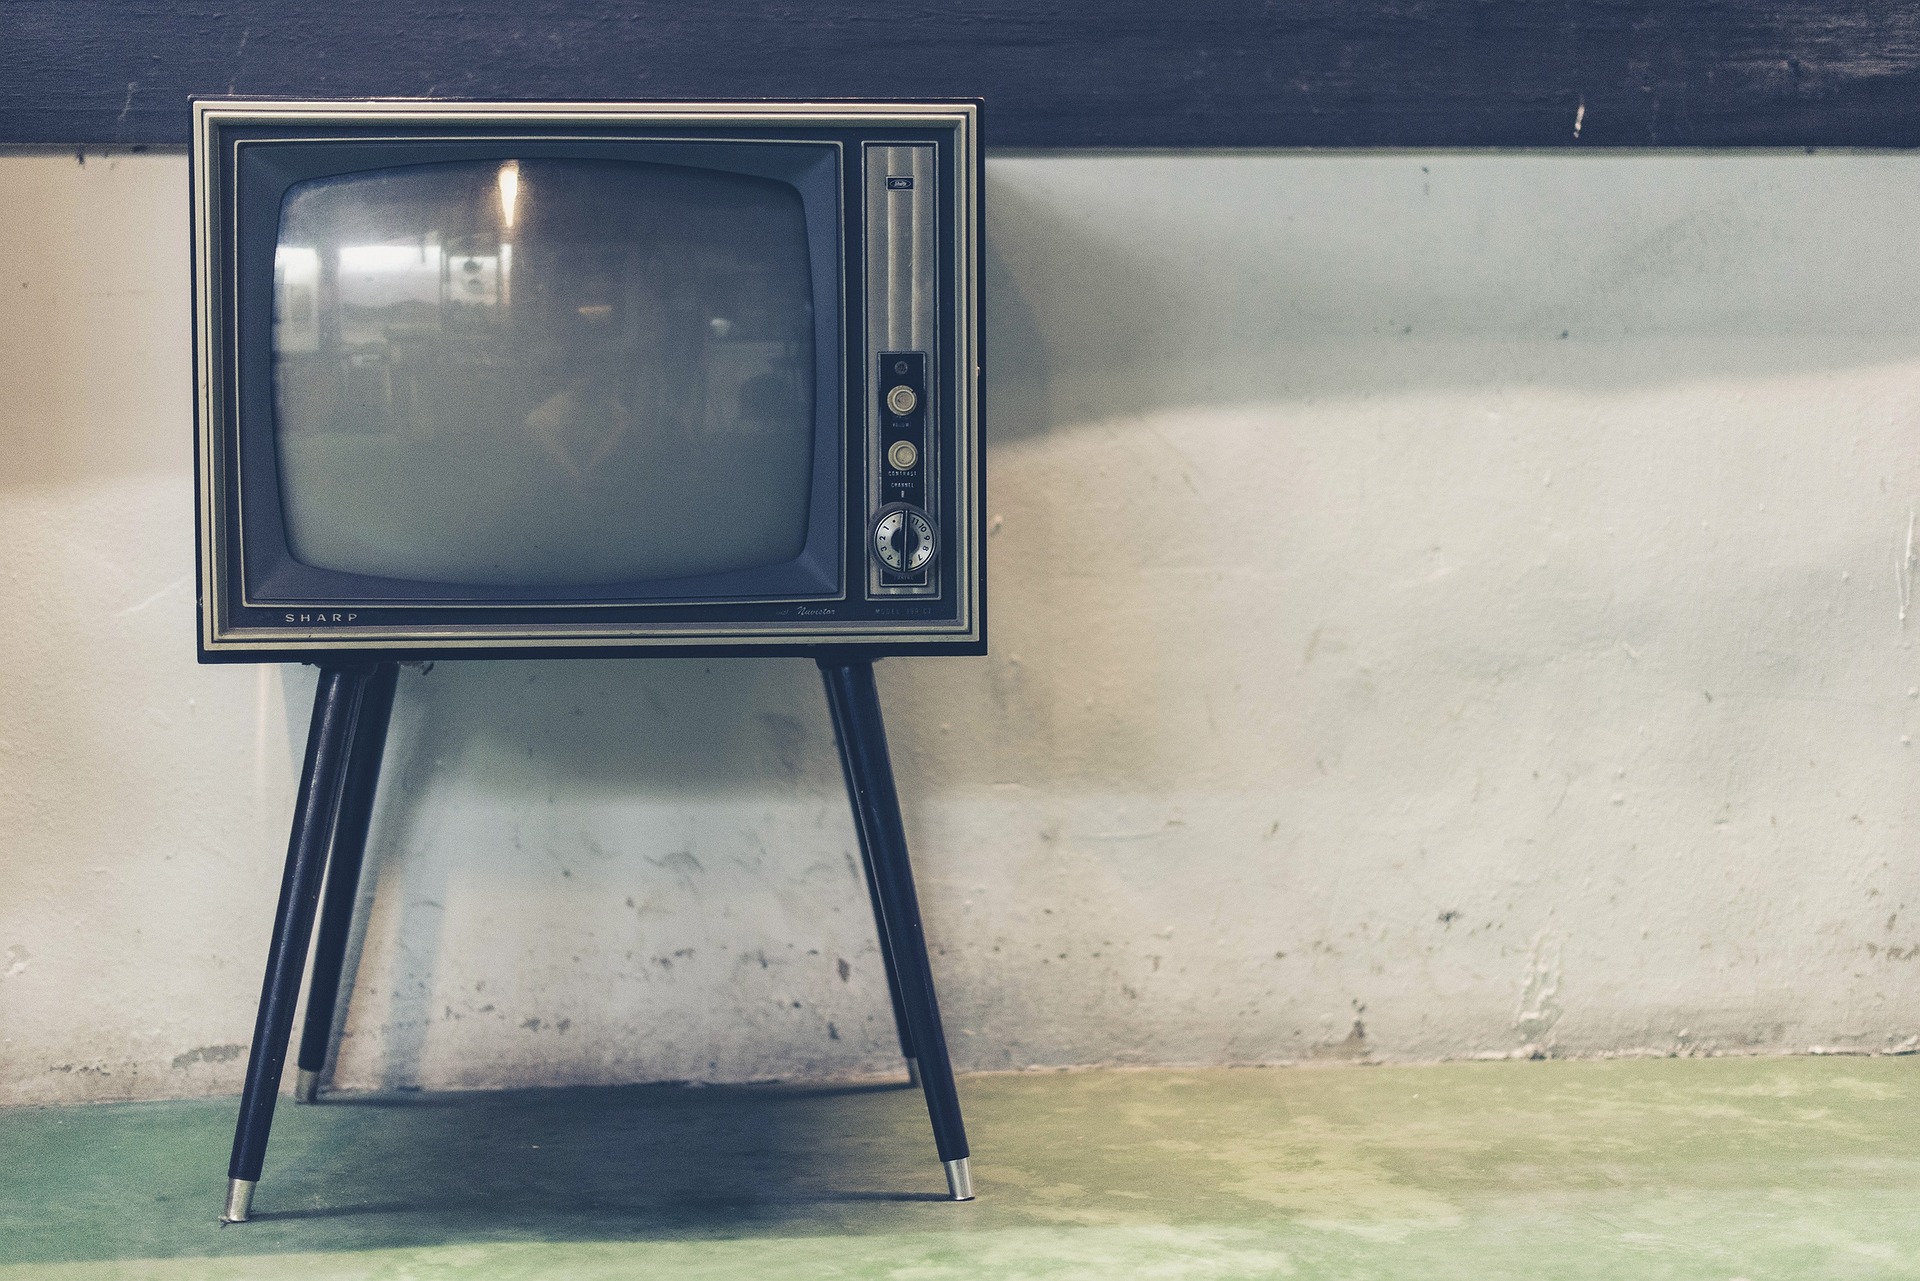 Das Ende des linearen Fernsehens? Ein Einblick in die Welt der IPTV-Plattformen